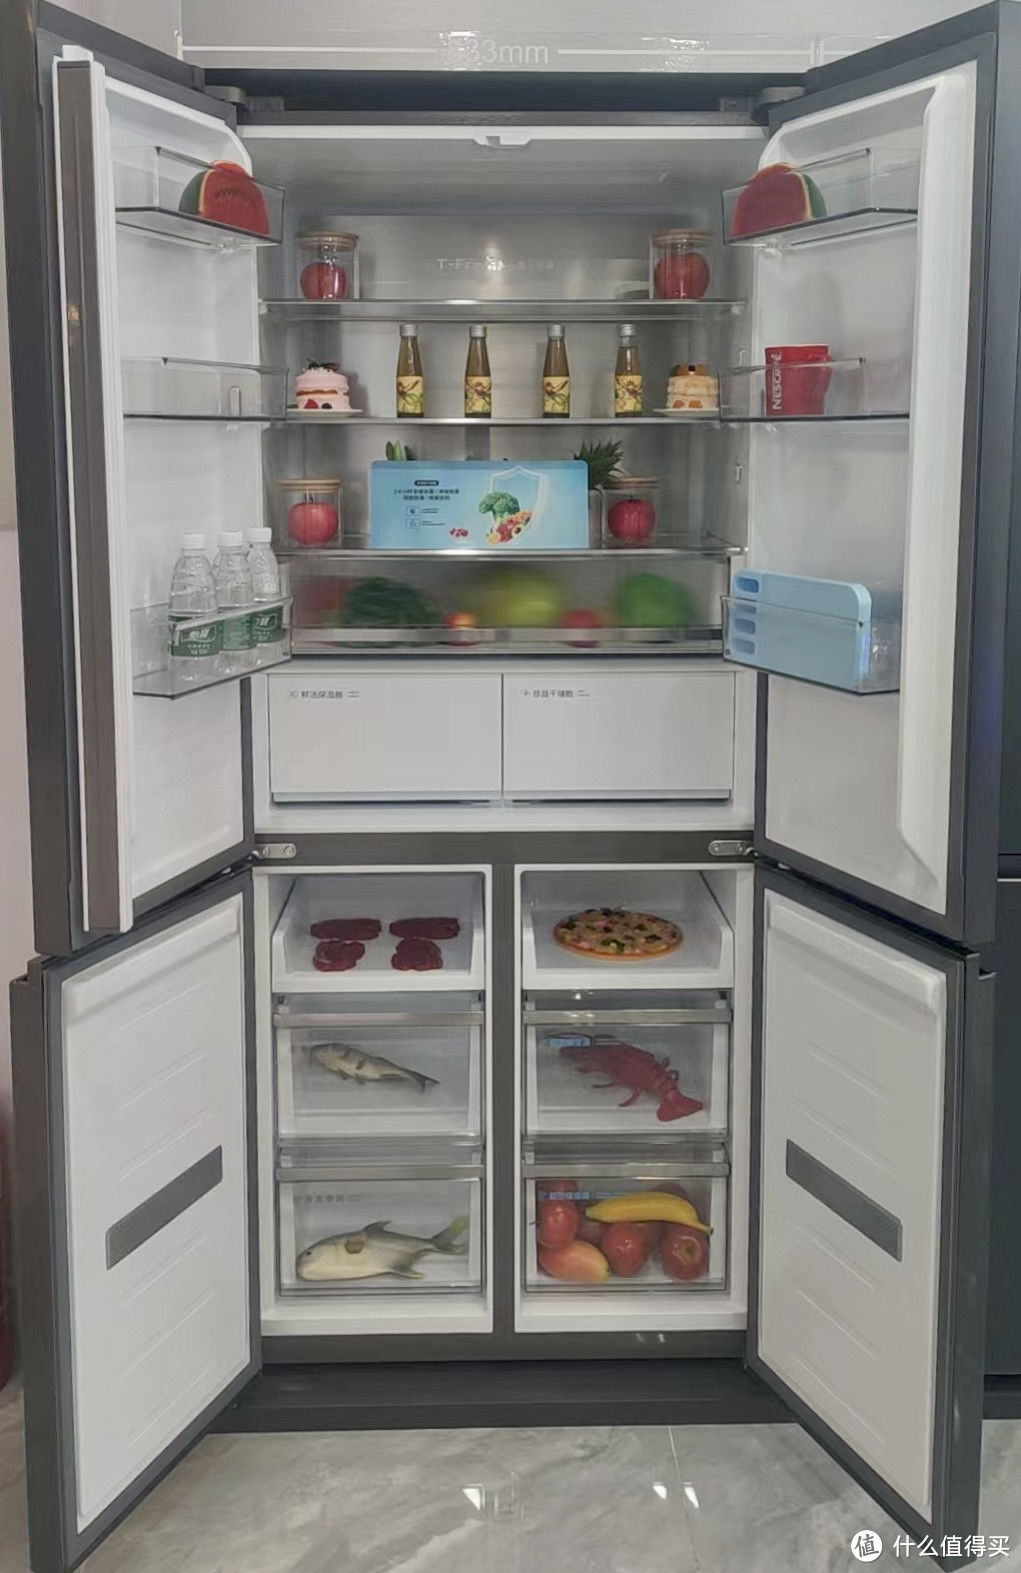 听我一句劝，全嵌入式冰箱真的有点绝，说实话，买了这个冰箱我真的有点后悔。。